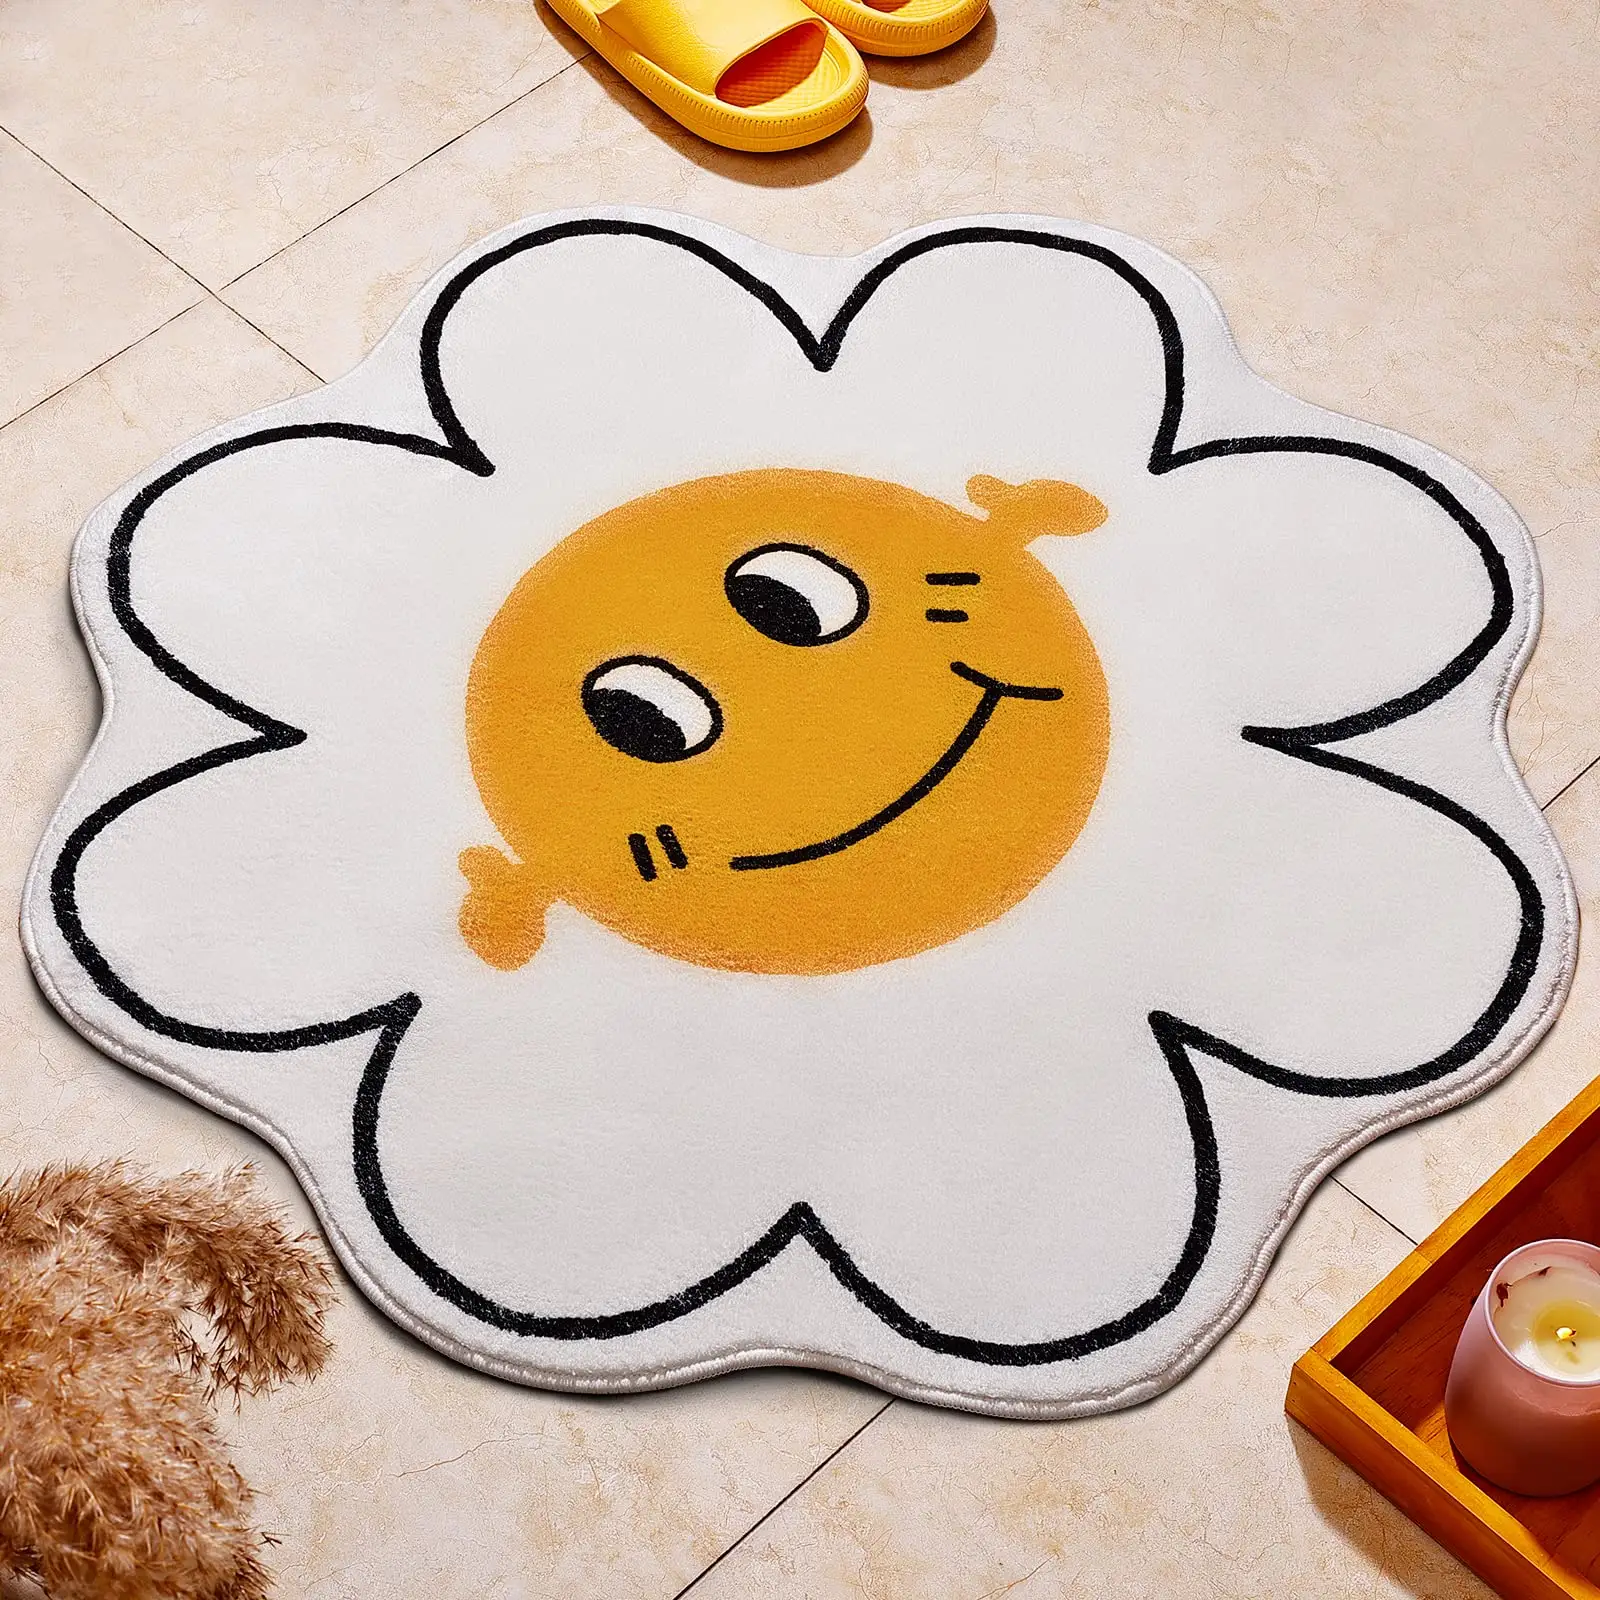 גדול סמיילי פנים אמבט שטיח חמוד חמניות אמבטיה להחליק מיקרופייבר רצפת מחצלות שפשפת חדר שינה חדר אמבטיה